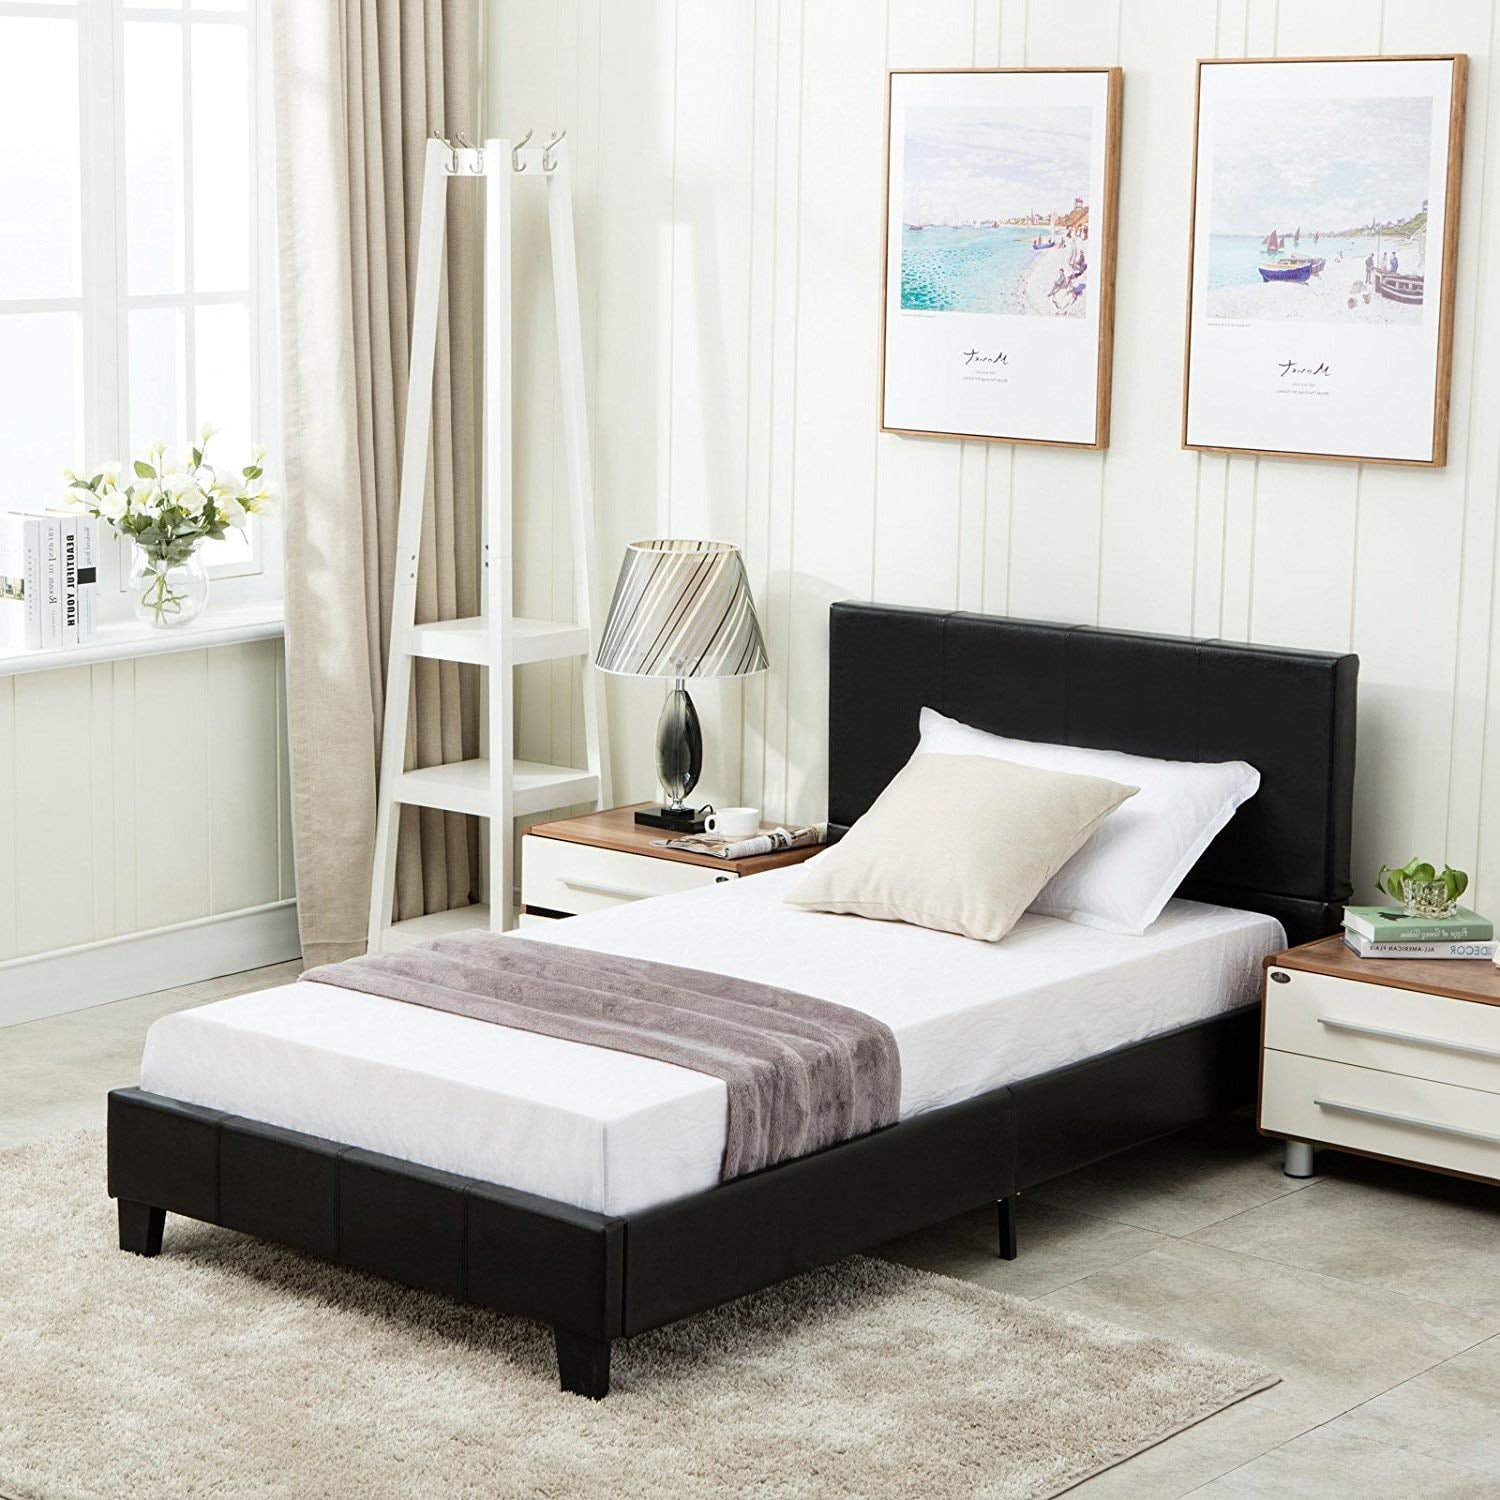 Full Size Leather Bed Frame Wood Slats w/Headboard Platform Bedroom Furniture